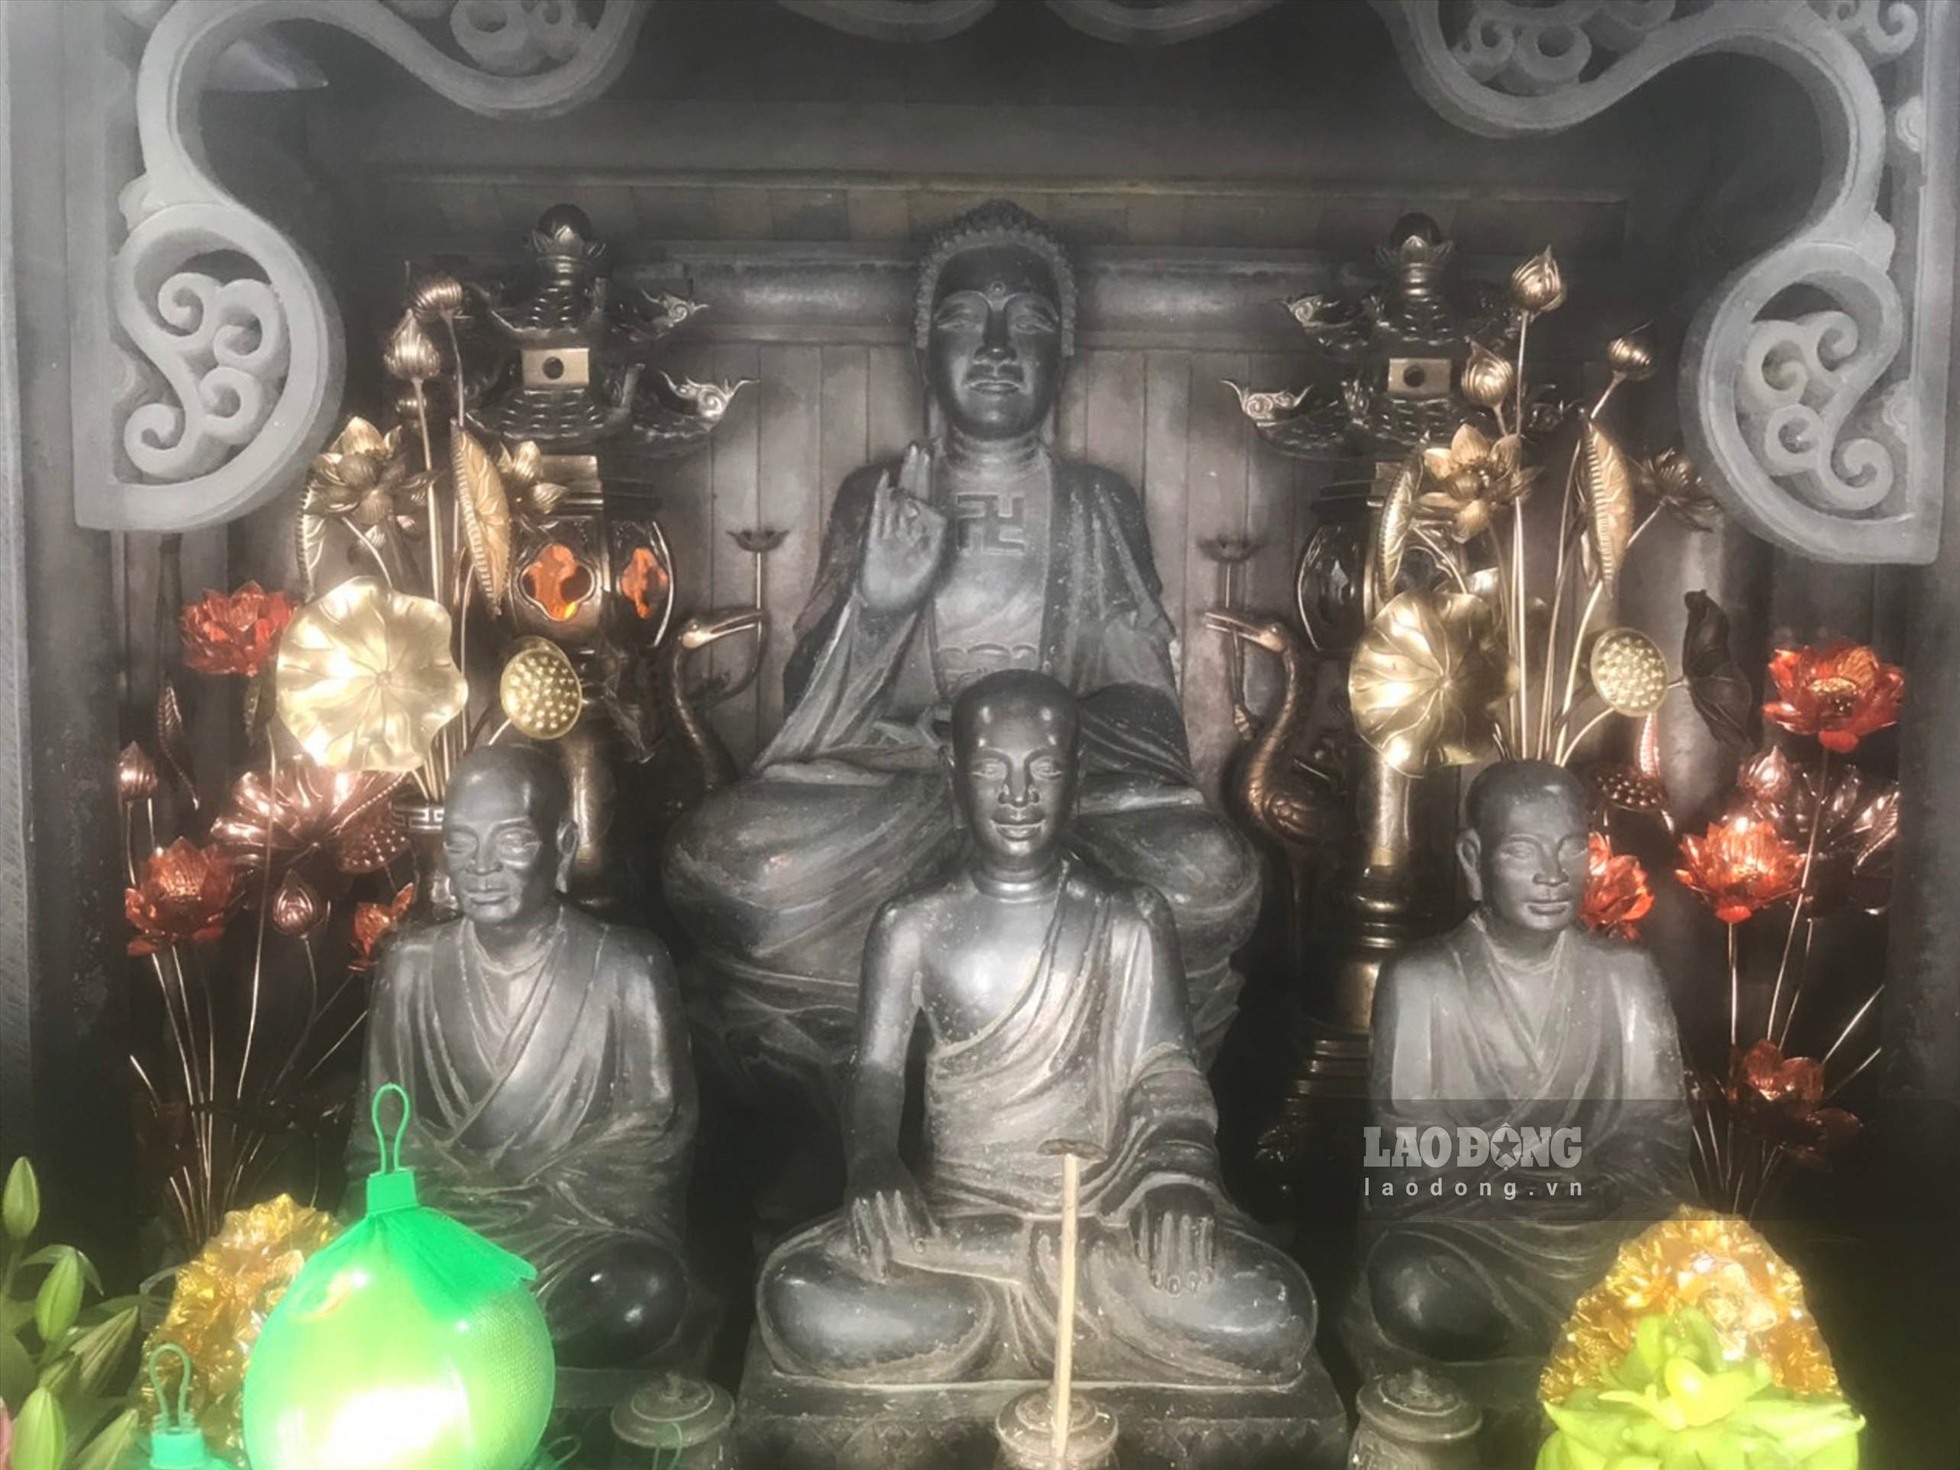 Hệ thống tượng Phật trong chùa gồm 1 pho tượng Phật Thích Ca và 3 pho tượng Tam Tổ Trúc Lâm. Tượng có kích thước cao trung bình từ 0,45-0,87m tọa trên đài sen, trong đó 3 pho tượng Tổ được tạo tác lớn hơn.